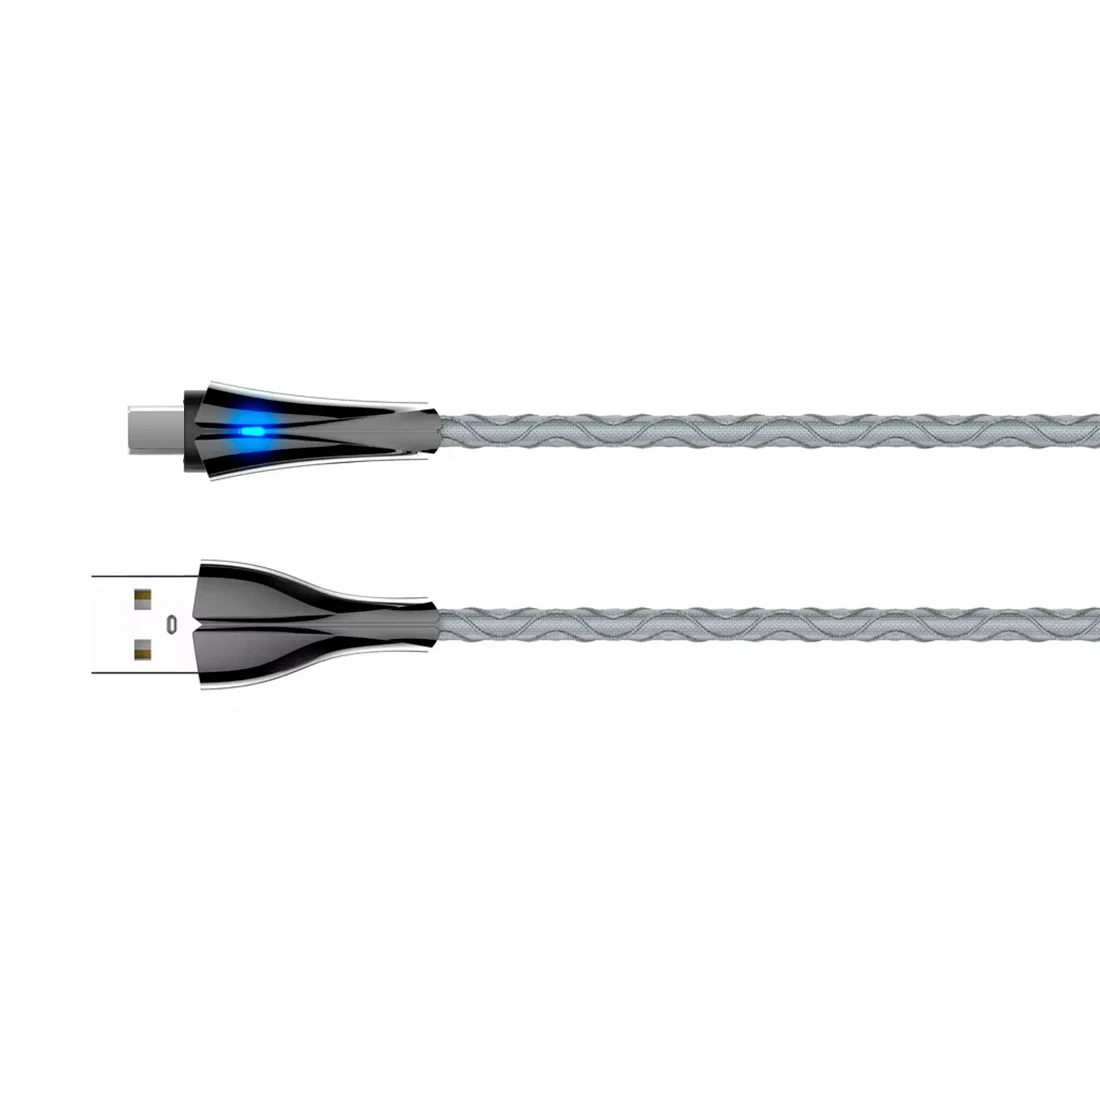 Kabel z diodą LED do szybkiego ładowania USB-A / micro-USB 1m szary LS461M